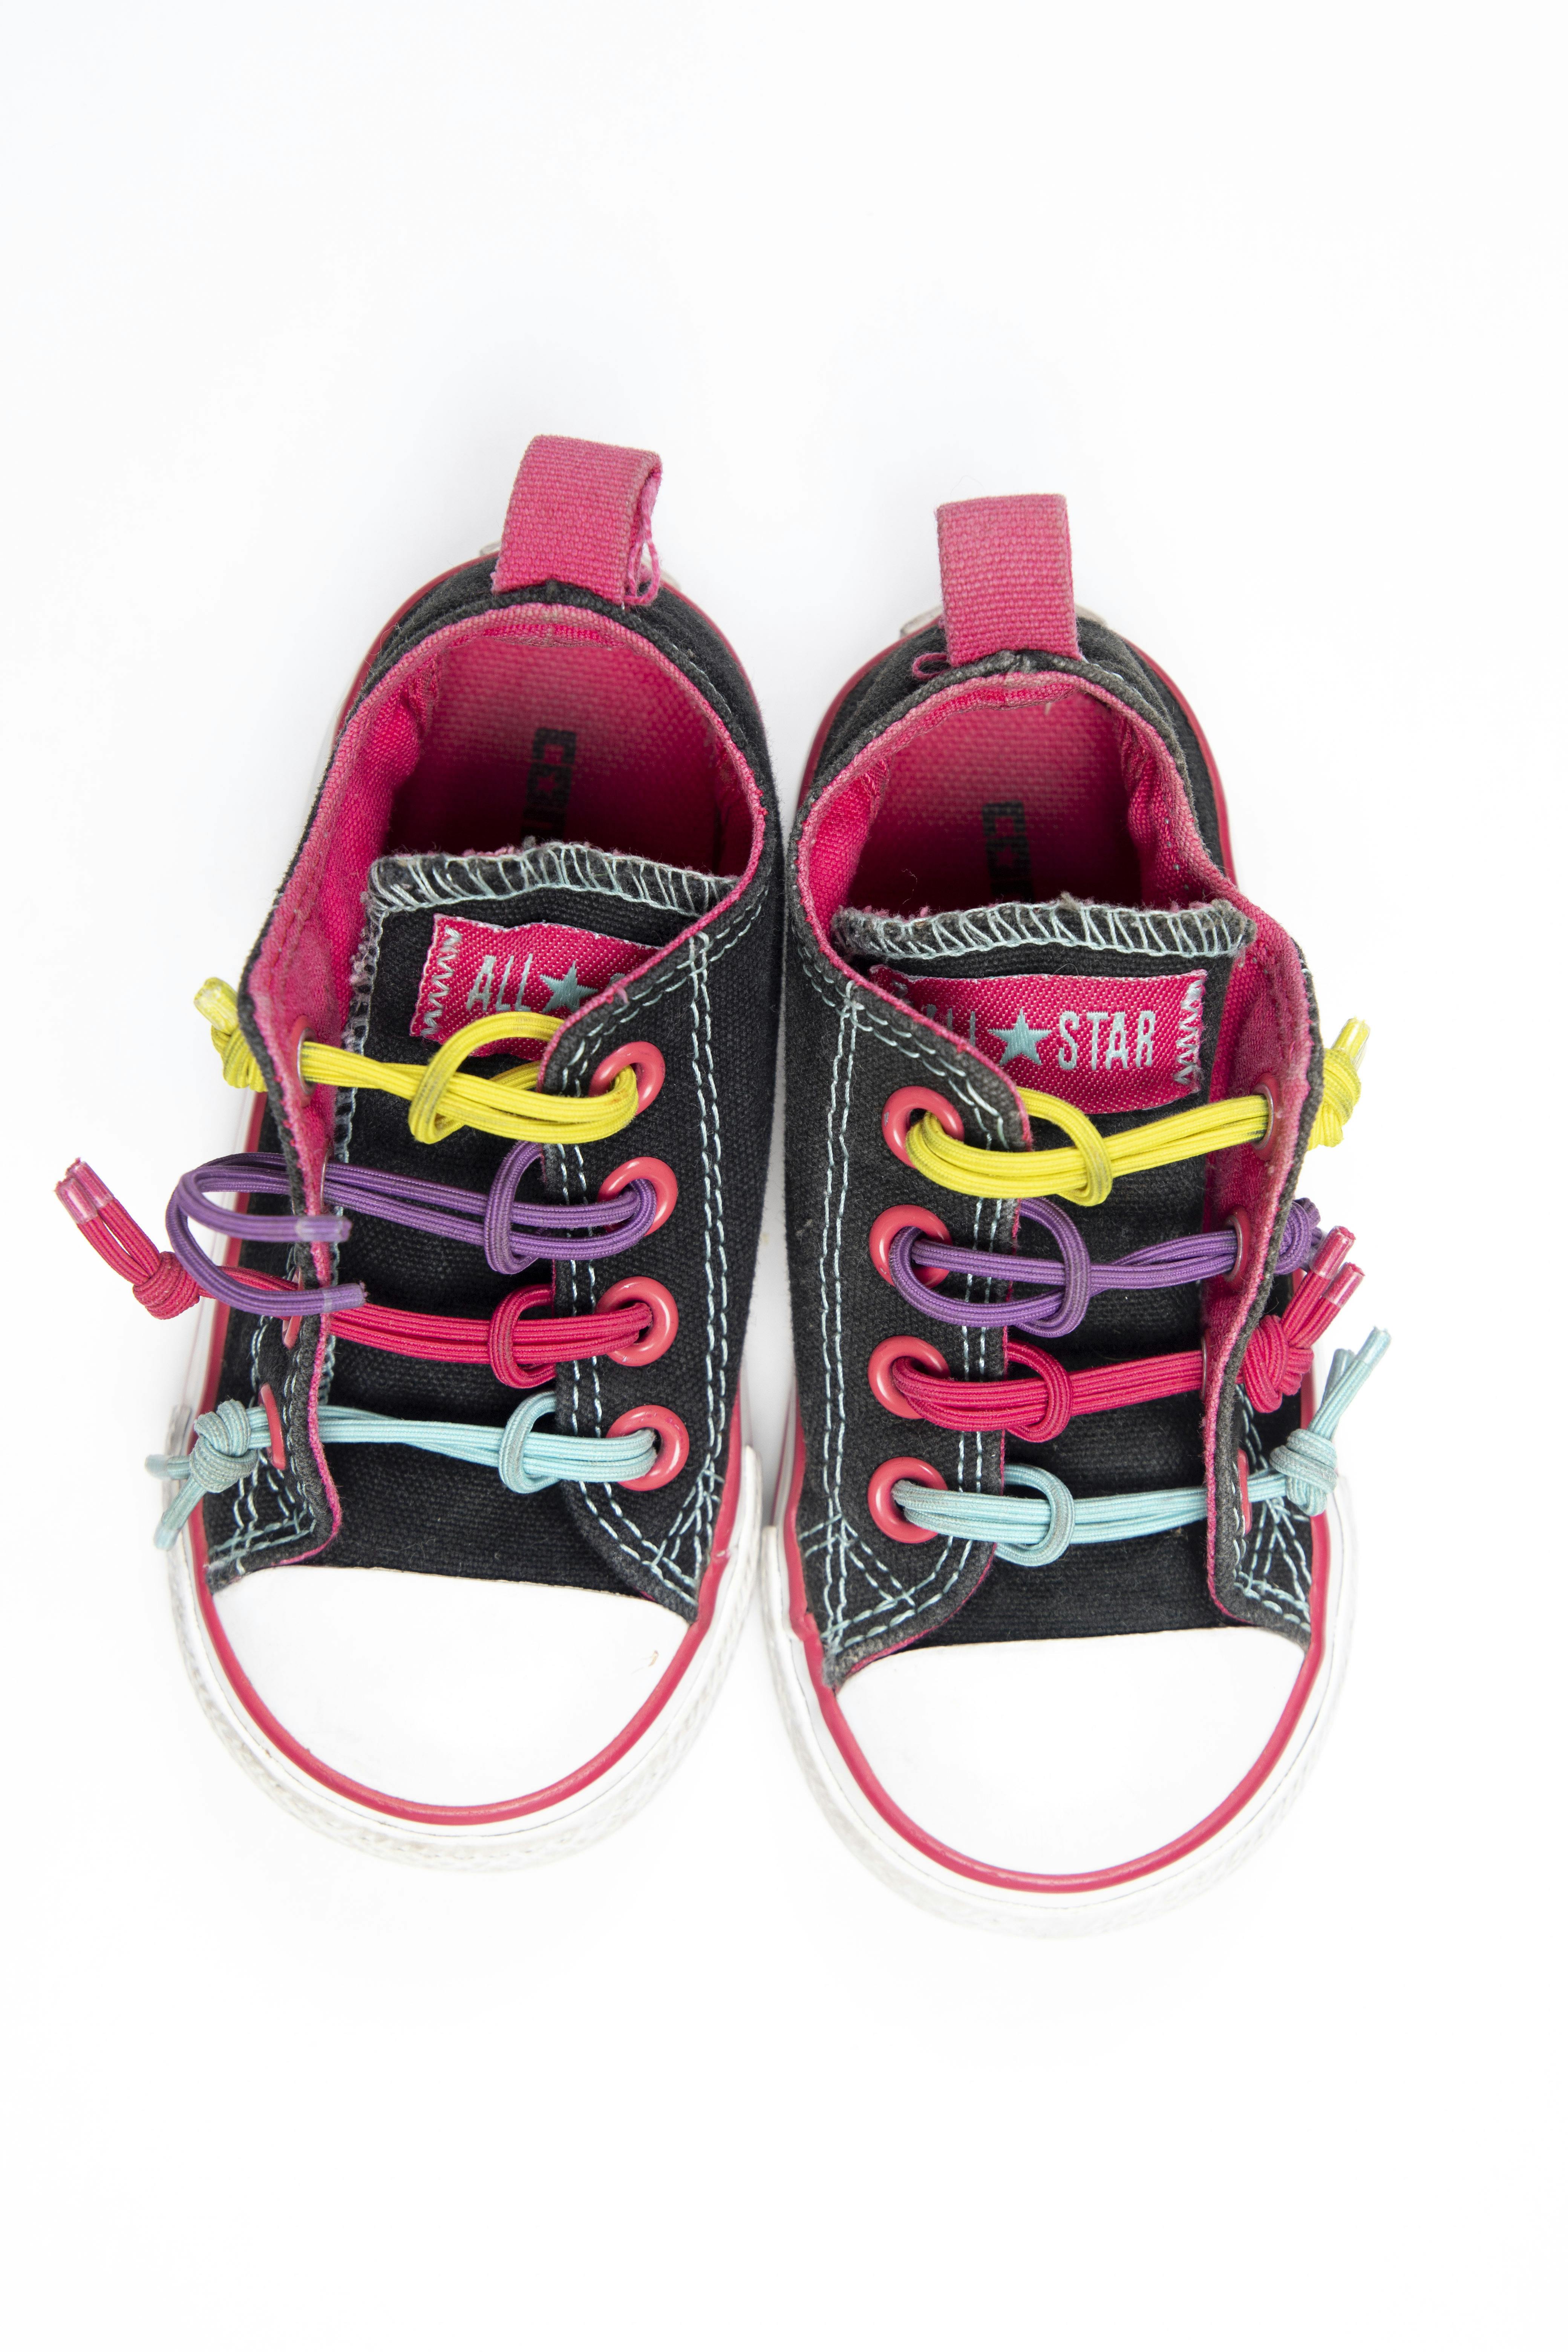 Ropa de niña, niño y bebé - Zapatos y zapatillas - Converse | Tienda Online  | Las Traperas